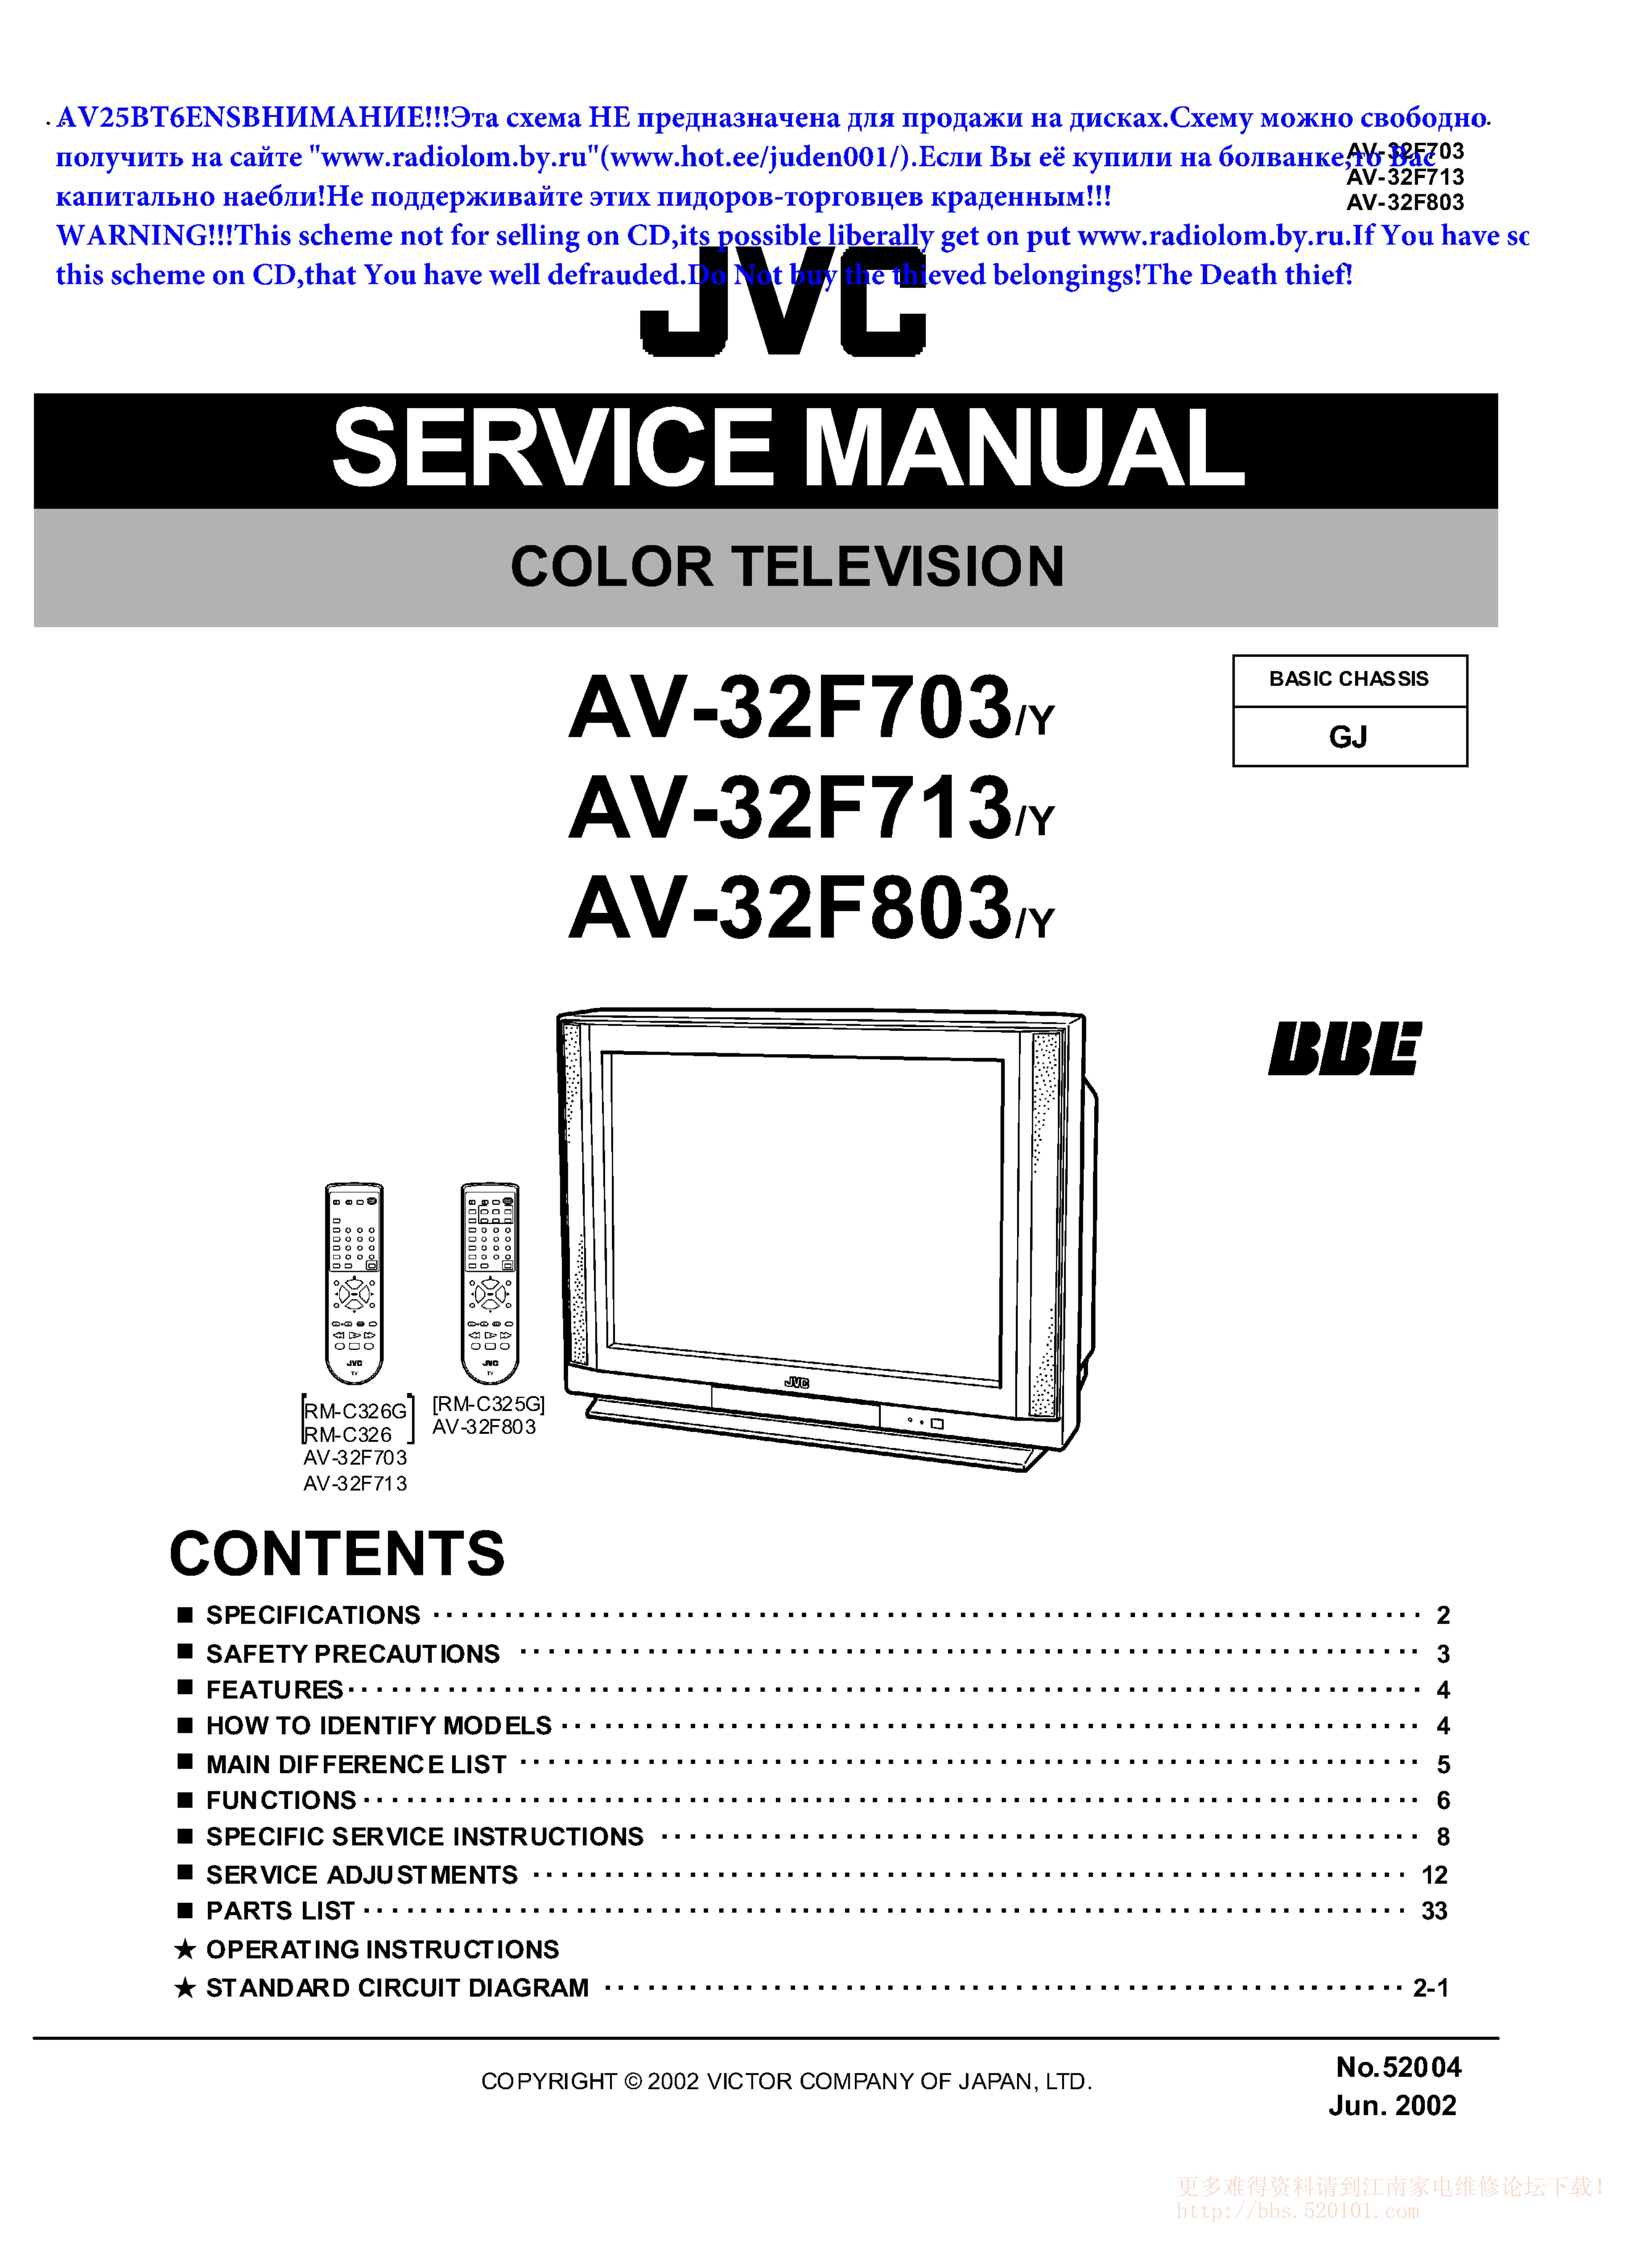 JVC胜利AV32F703彩电维修手册和图纸-0